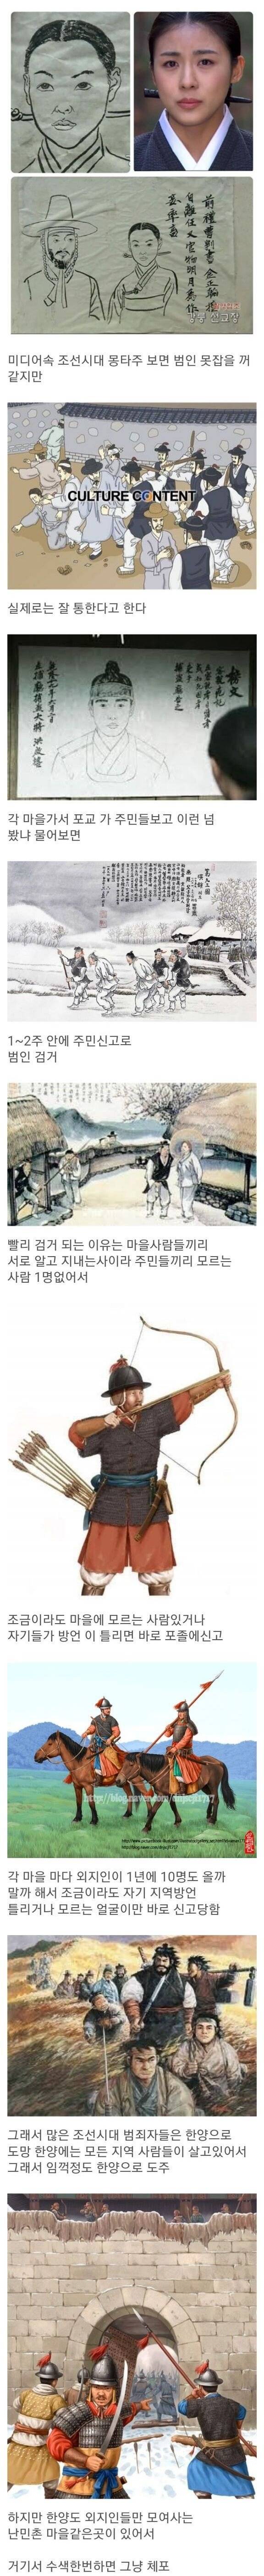 조선시대 검거율이 좋았던 이유